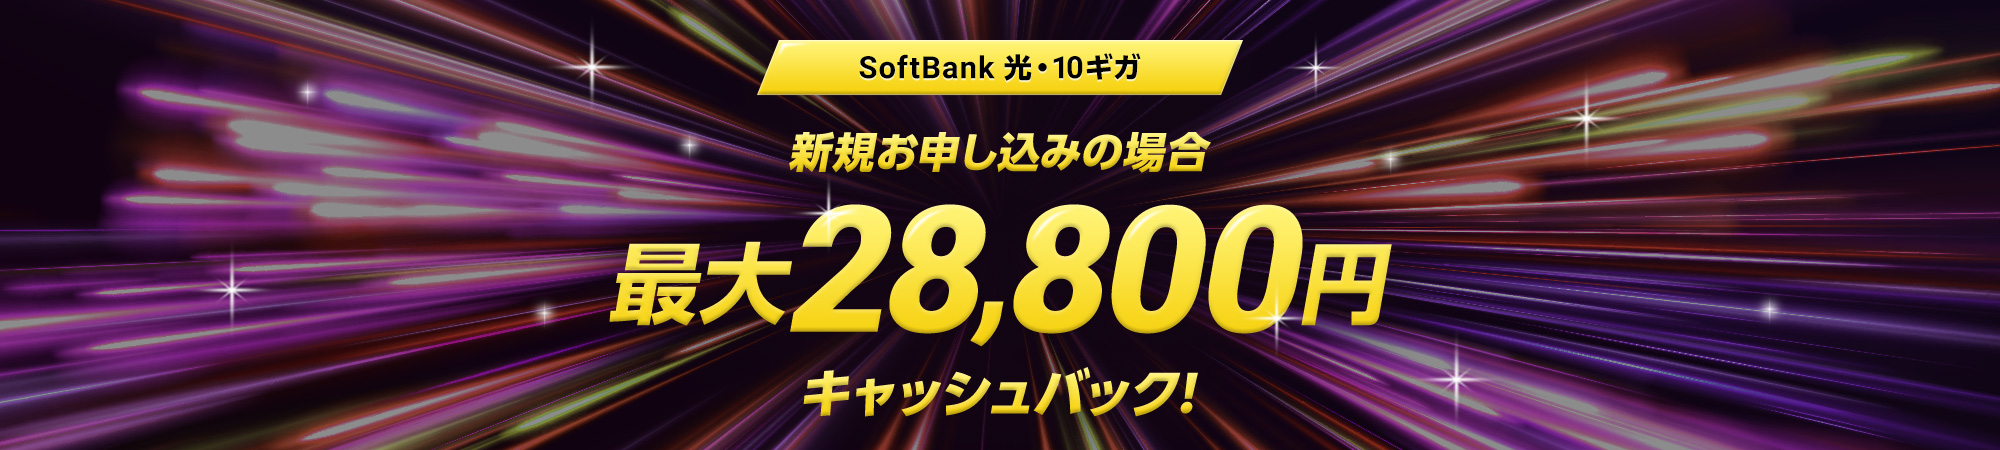 SoftBank 光・10ギガ 新規お申し込みの場合 最大24,000円キャッシュバック